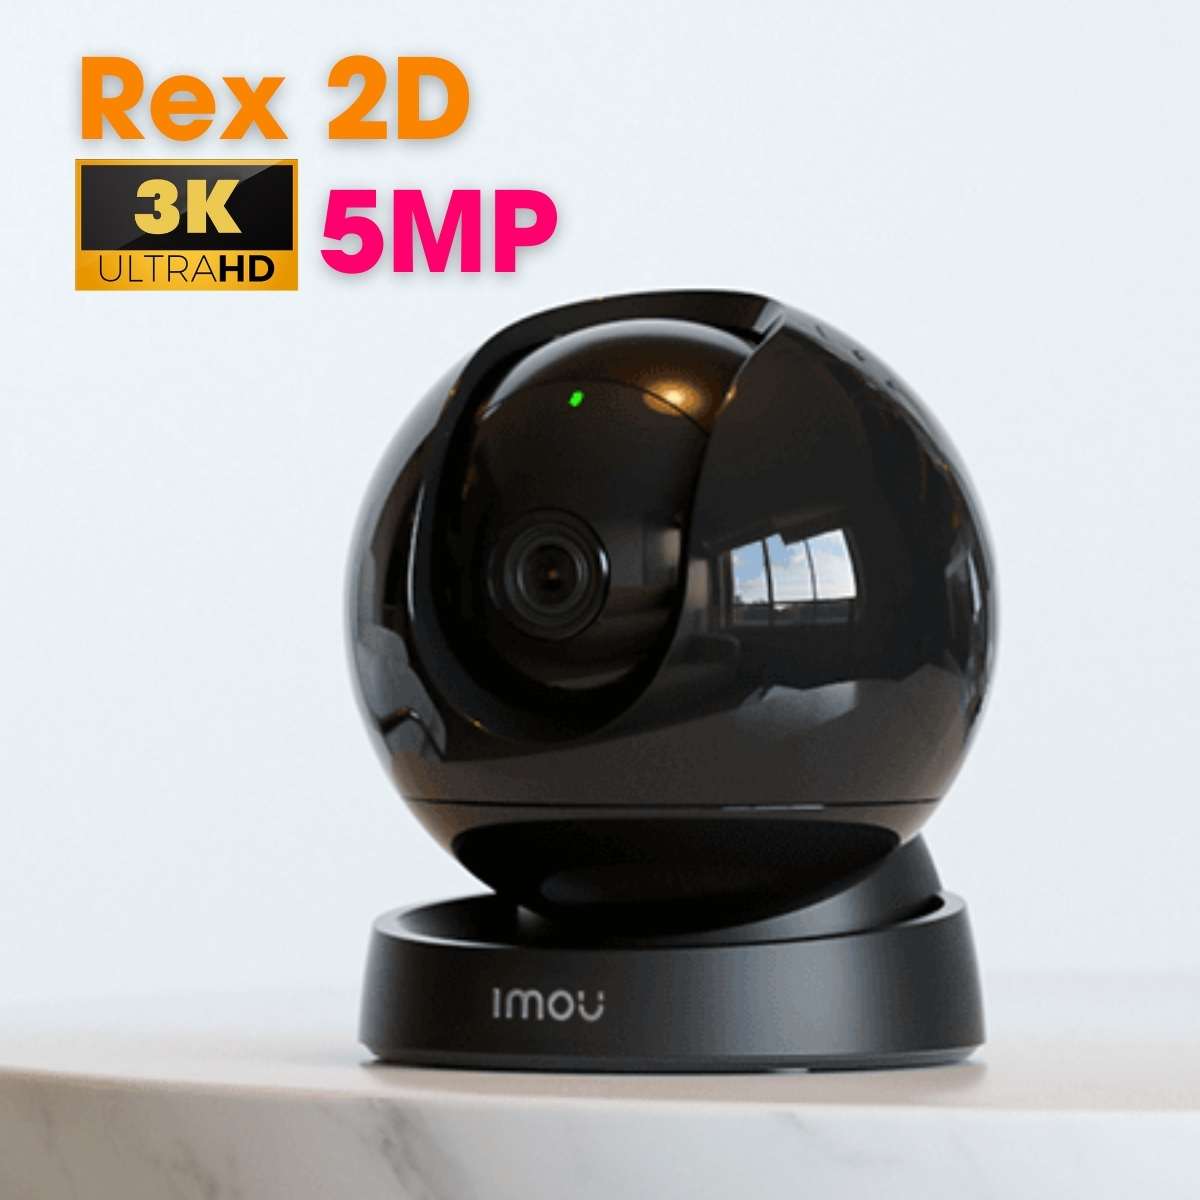 Camera rex 2D Imou GK2DP-5C0W 5MP 3K, phát hiện người, đàm thoại 2 chiều, tích hợp mic và loa